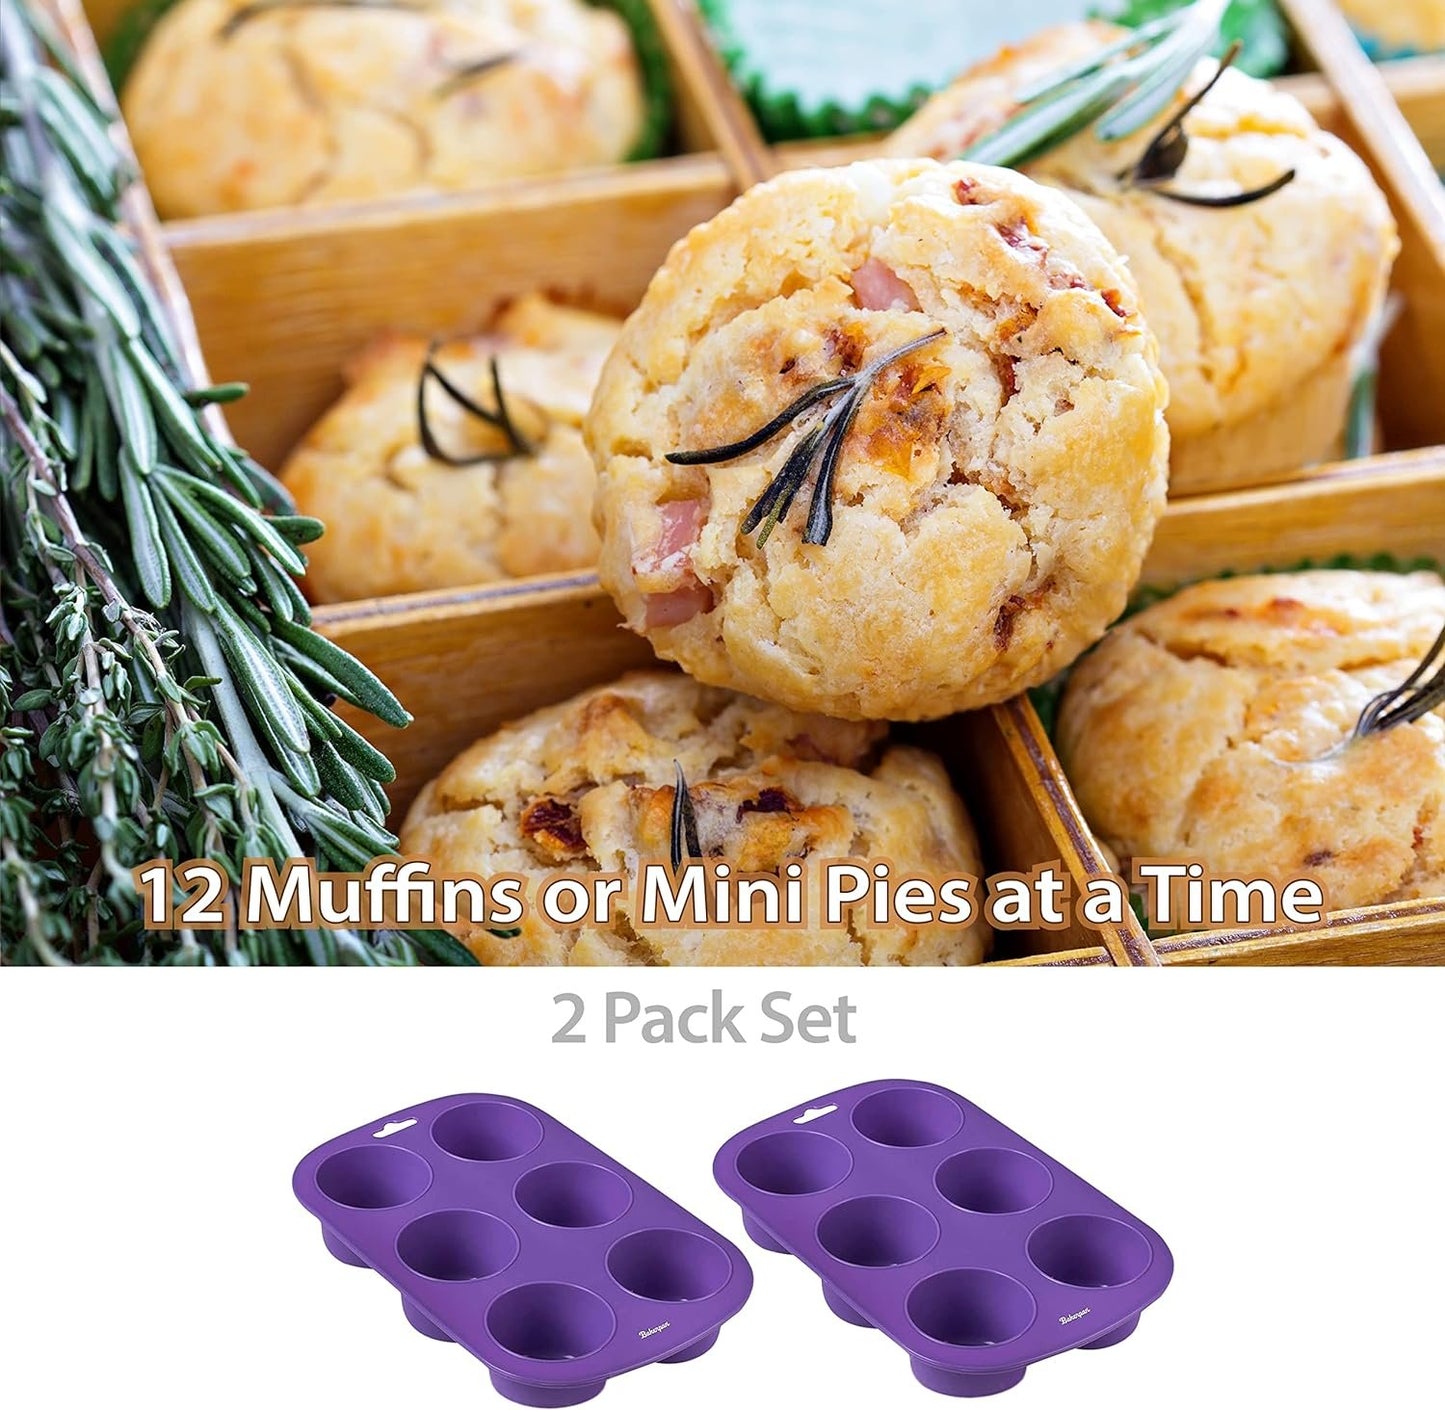 Bakerpan Silicone Muffin Pan, Cupcake Tray, Muffin Baking Mold, Muffin Tray